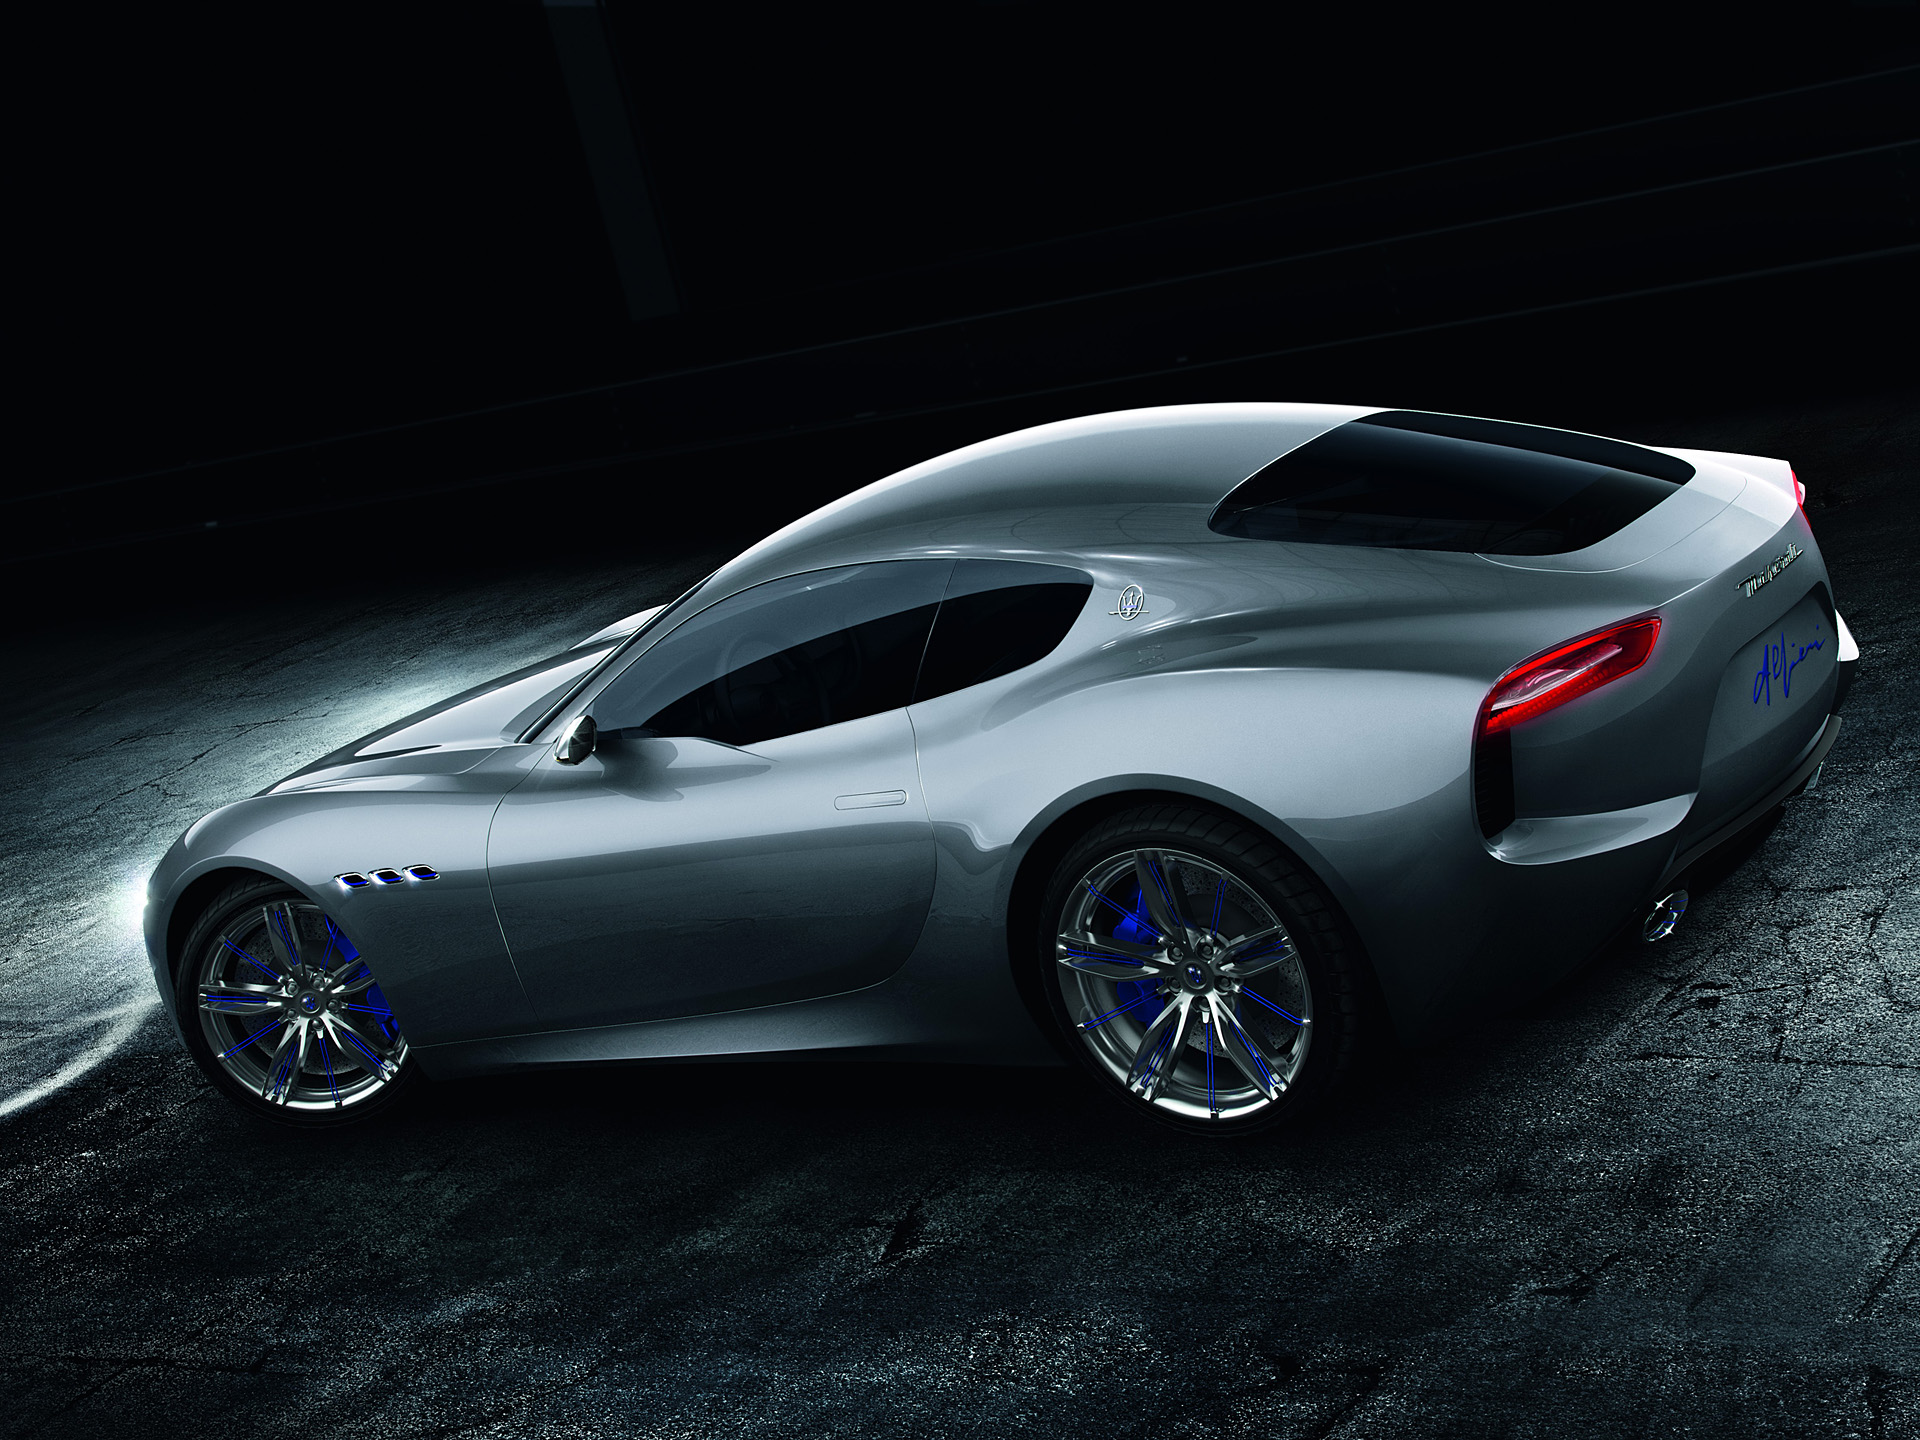  2014 Maserati Alfieri Concept Wallpaper.